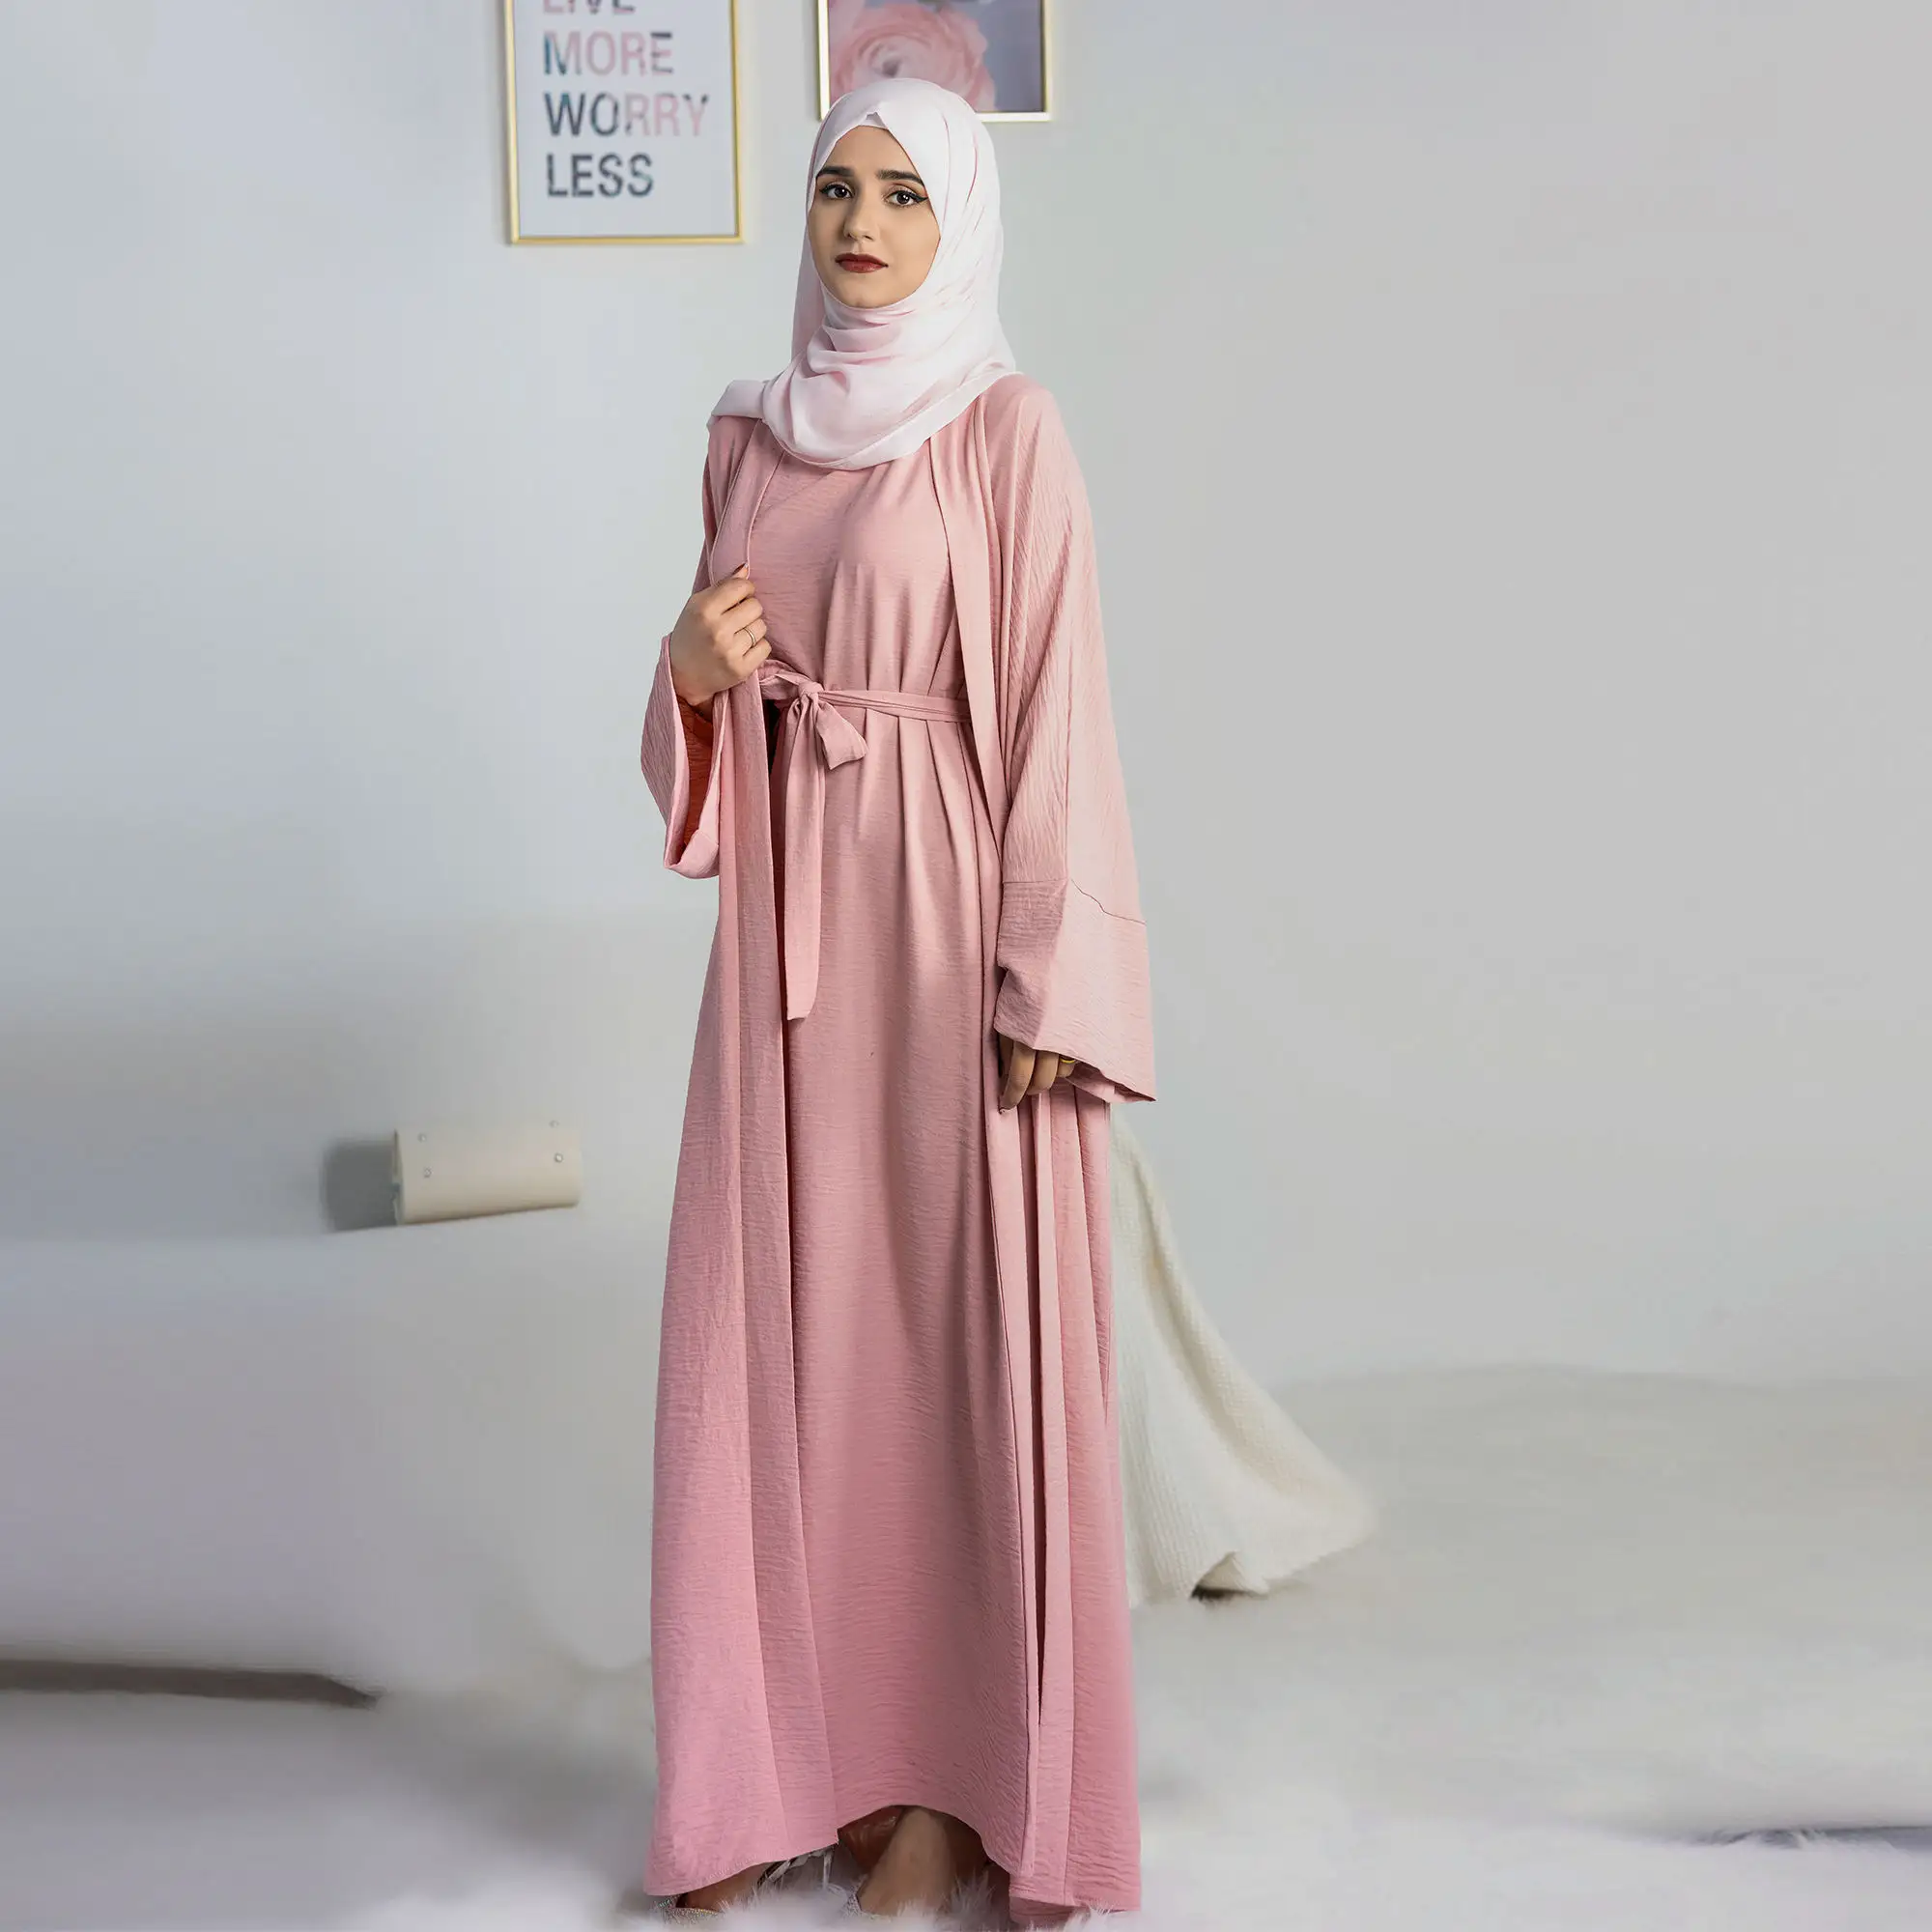 Hot Selling 2 Stuks Set Islamitische Kleding Dubai Abaya Moslim Jurk Voor Moslim Vrouwen Open Abaya Ontwerpen